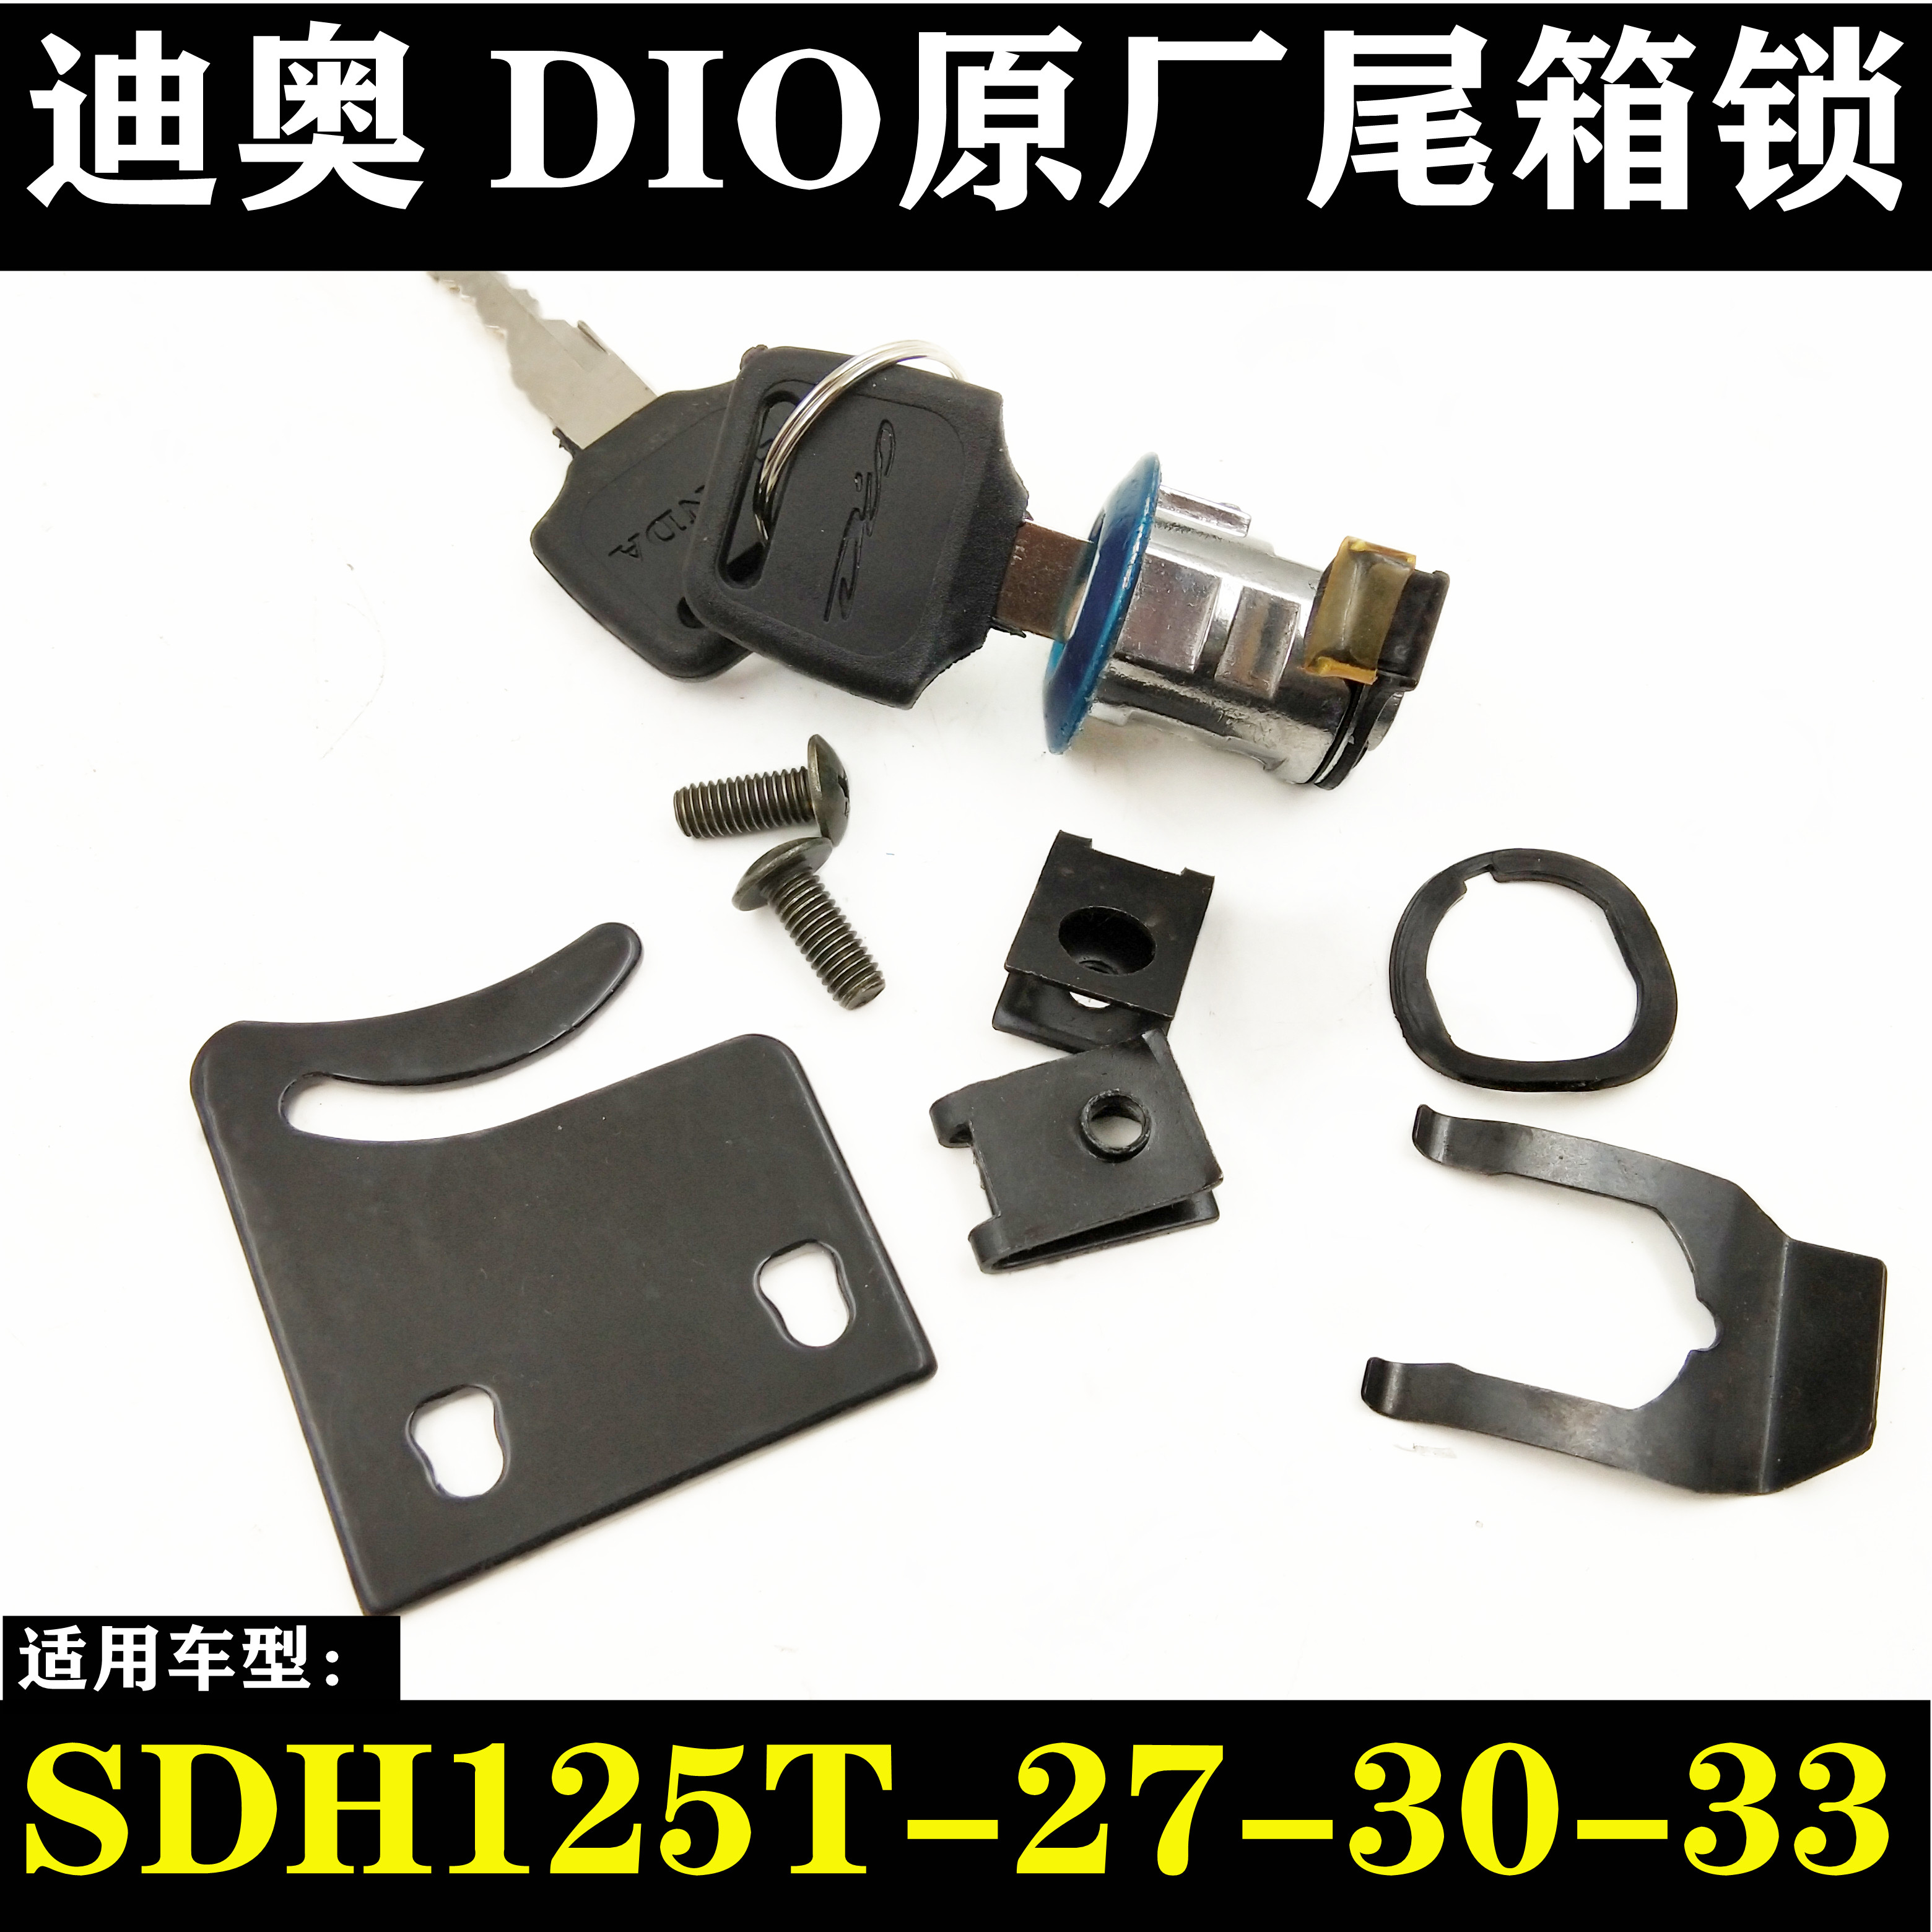 适用新大洲摩托车DIO迪奥SDH125T-27-30-33后备箱尾箱工具箱锁具